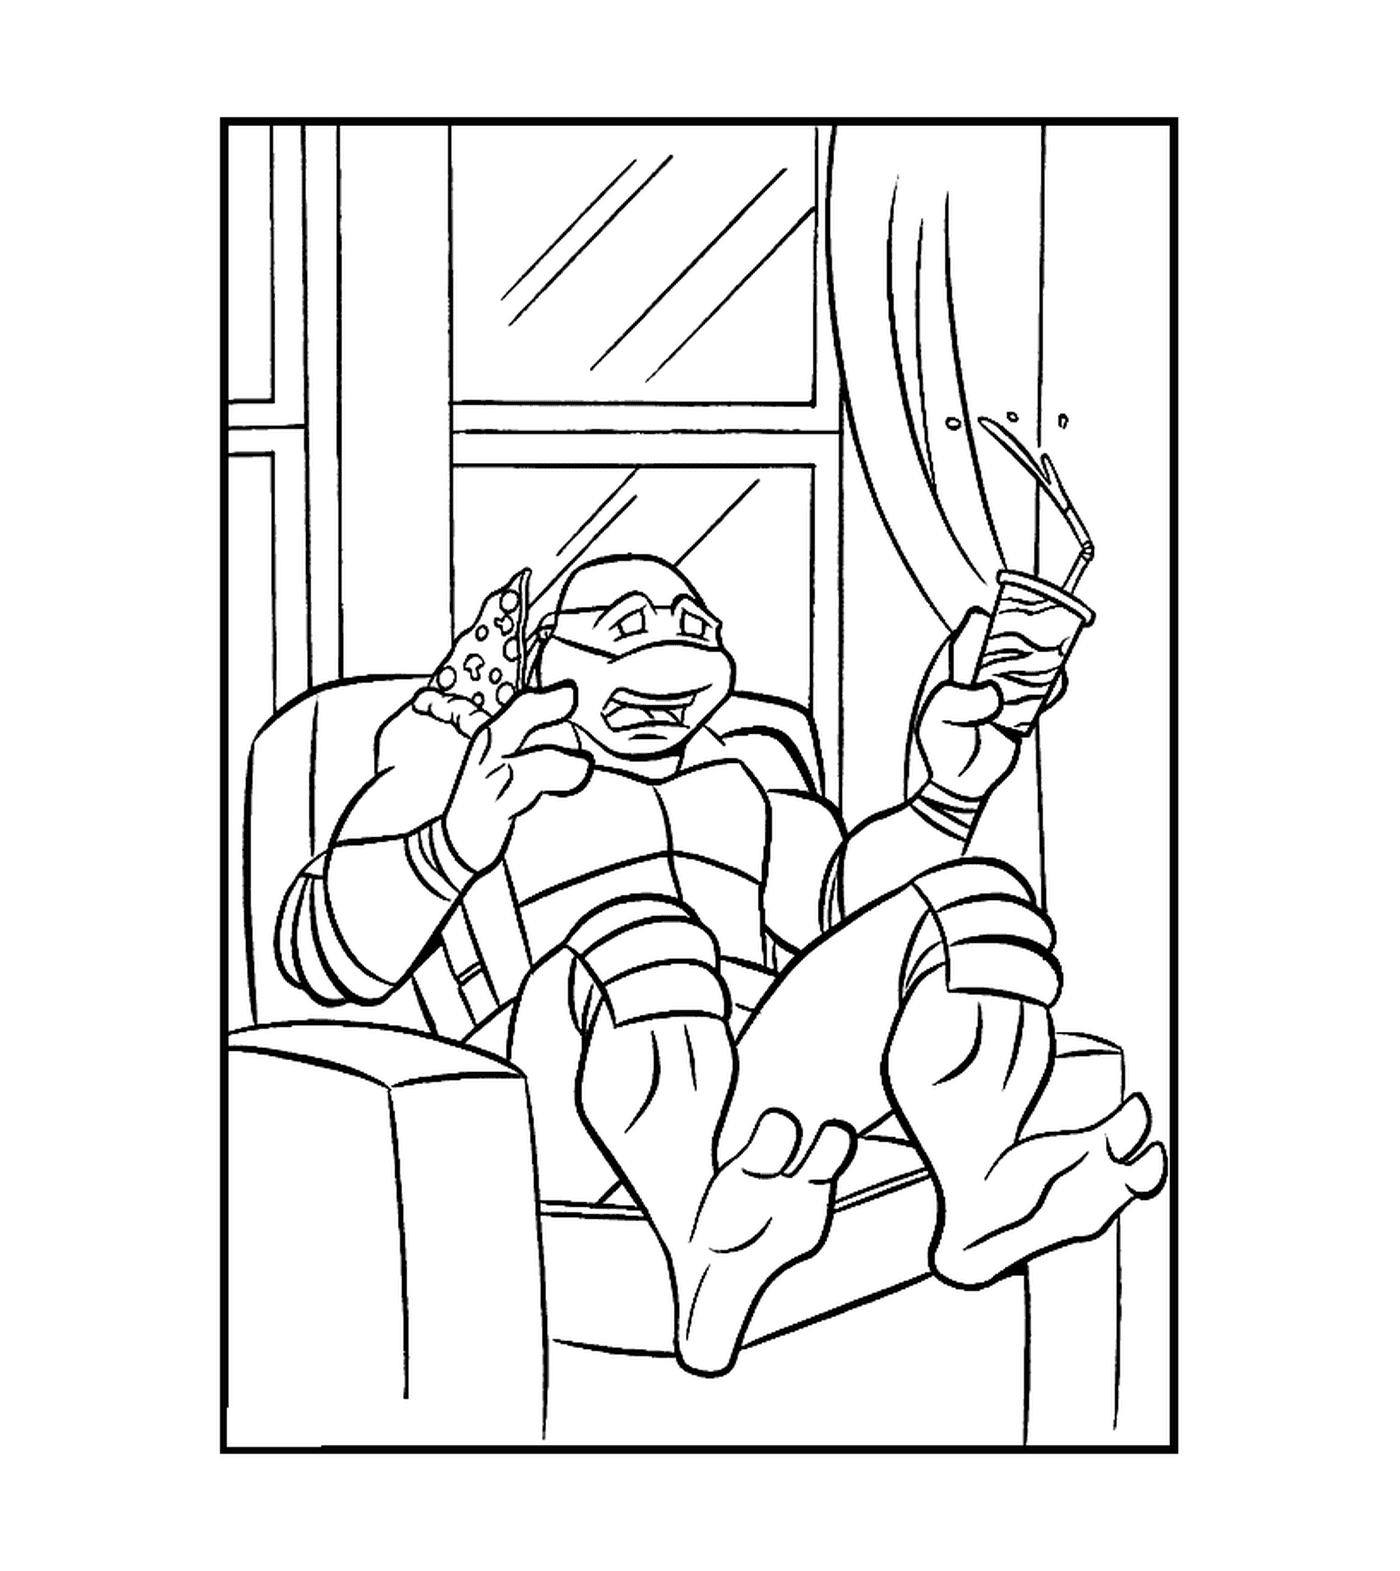  Tartaruga mutante descansando em uma cadeira 